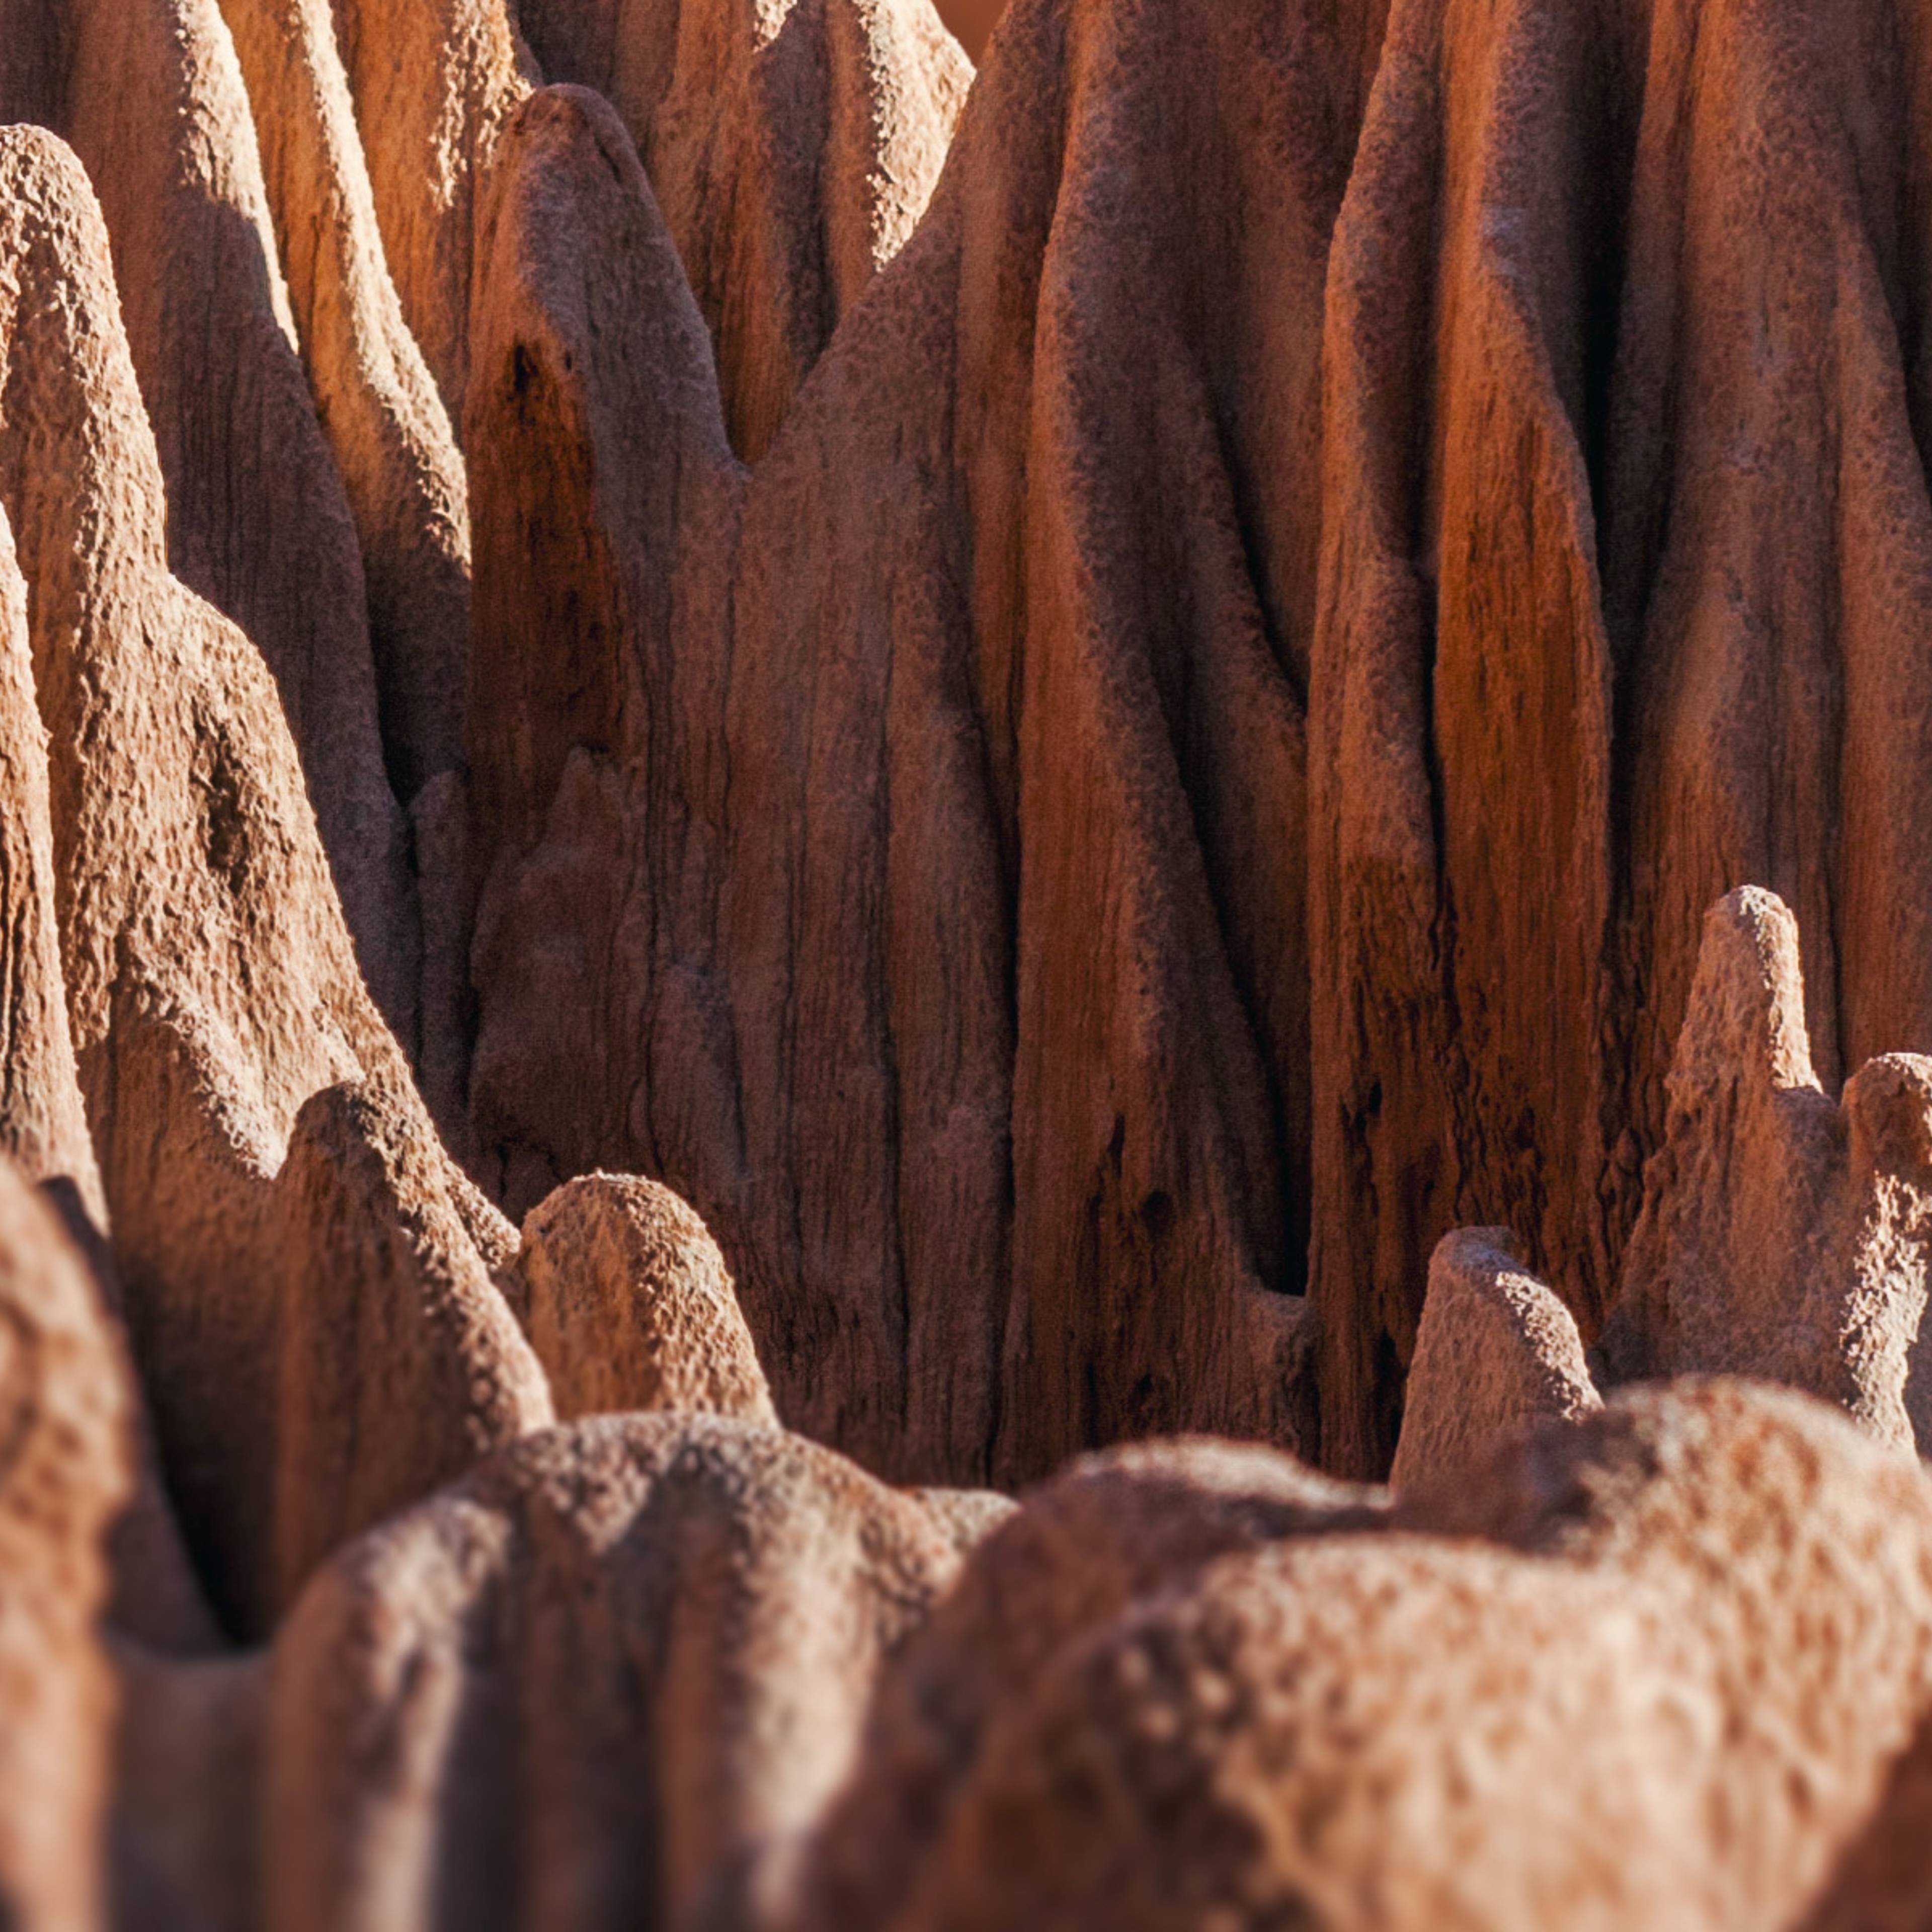 The Red tsingy of Antsiranana, Madagascar. Karsts naturale ma